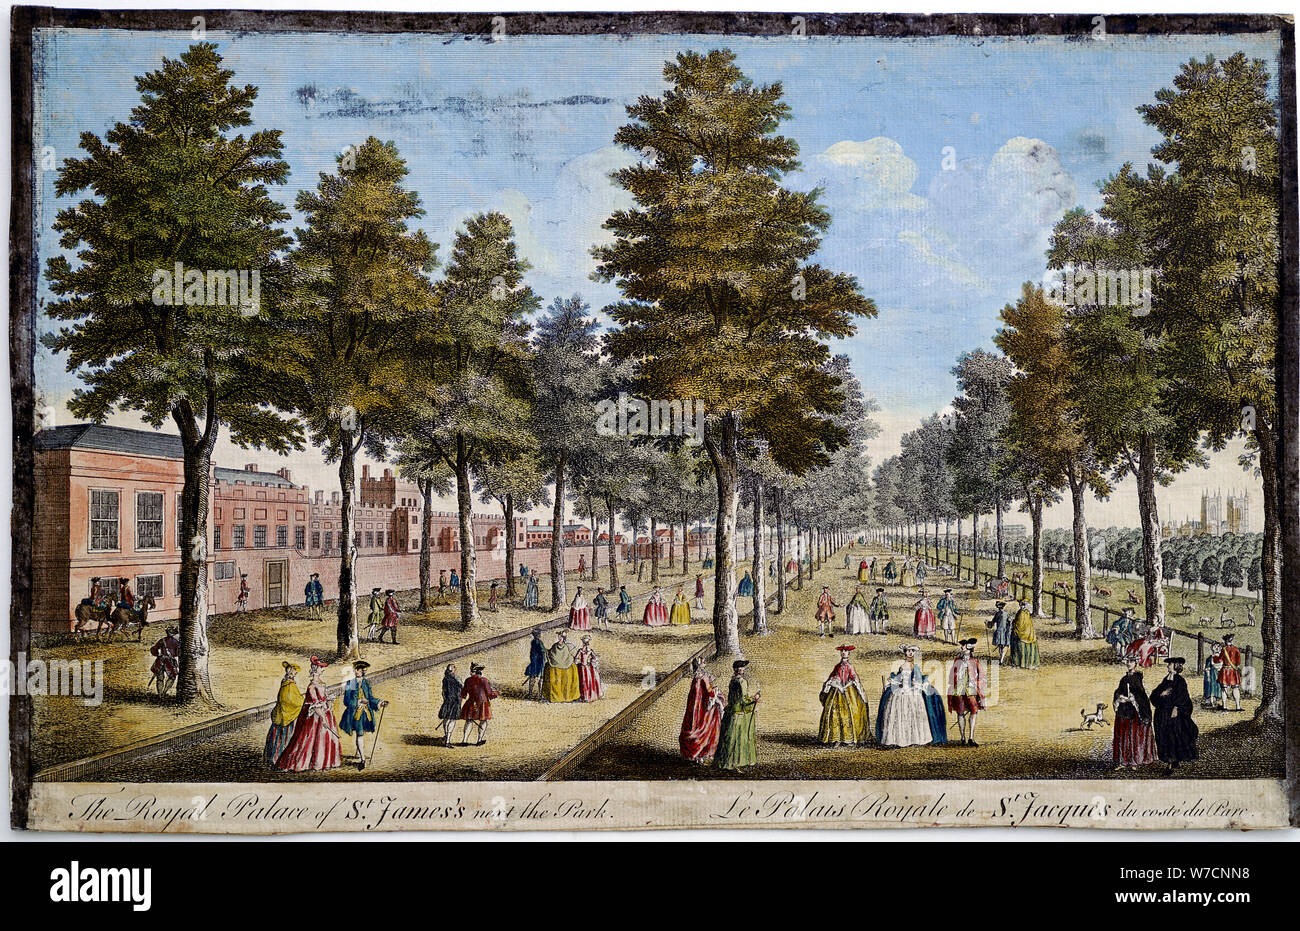 St James' Palace et Park, Londres, montrant une plantation d'arbres dans les avenues, 1750. Artiste : Inconnu Banque D'Images